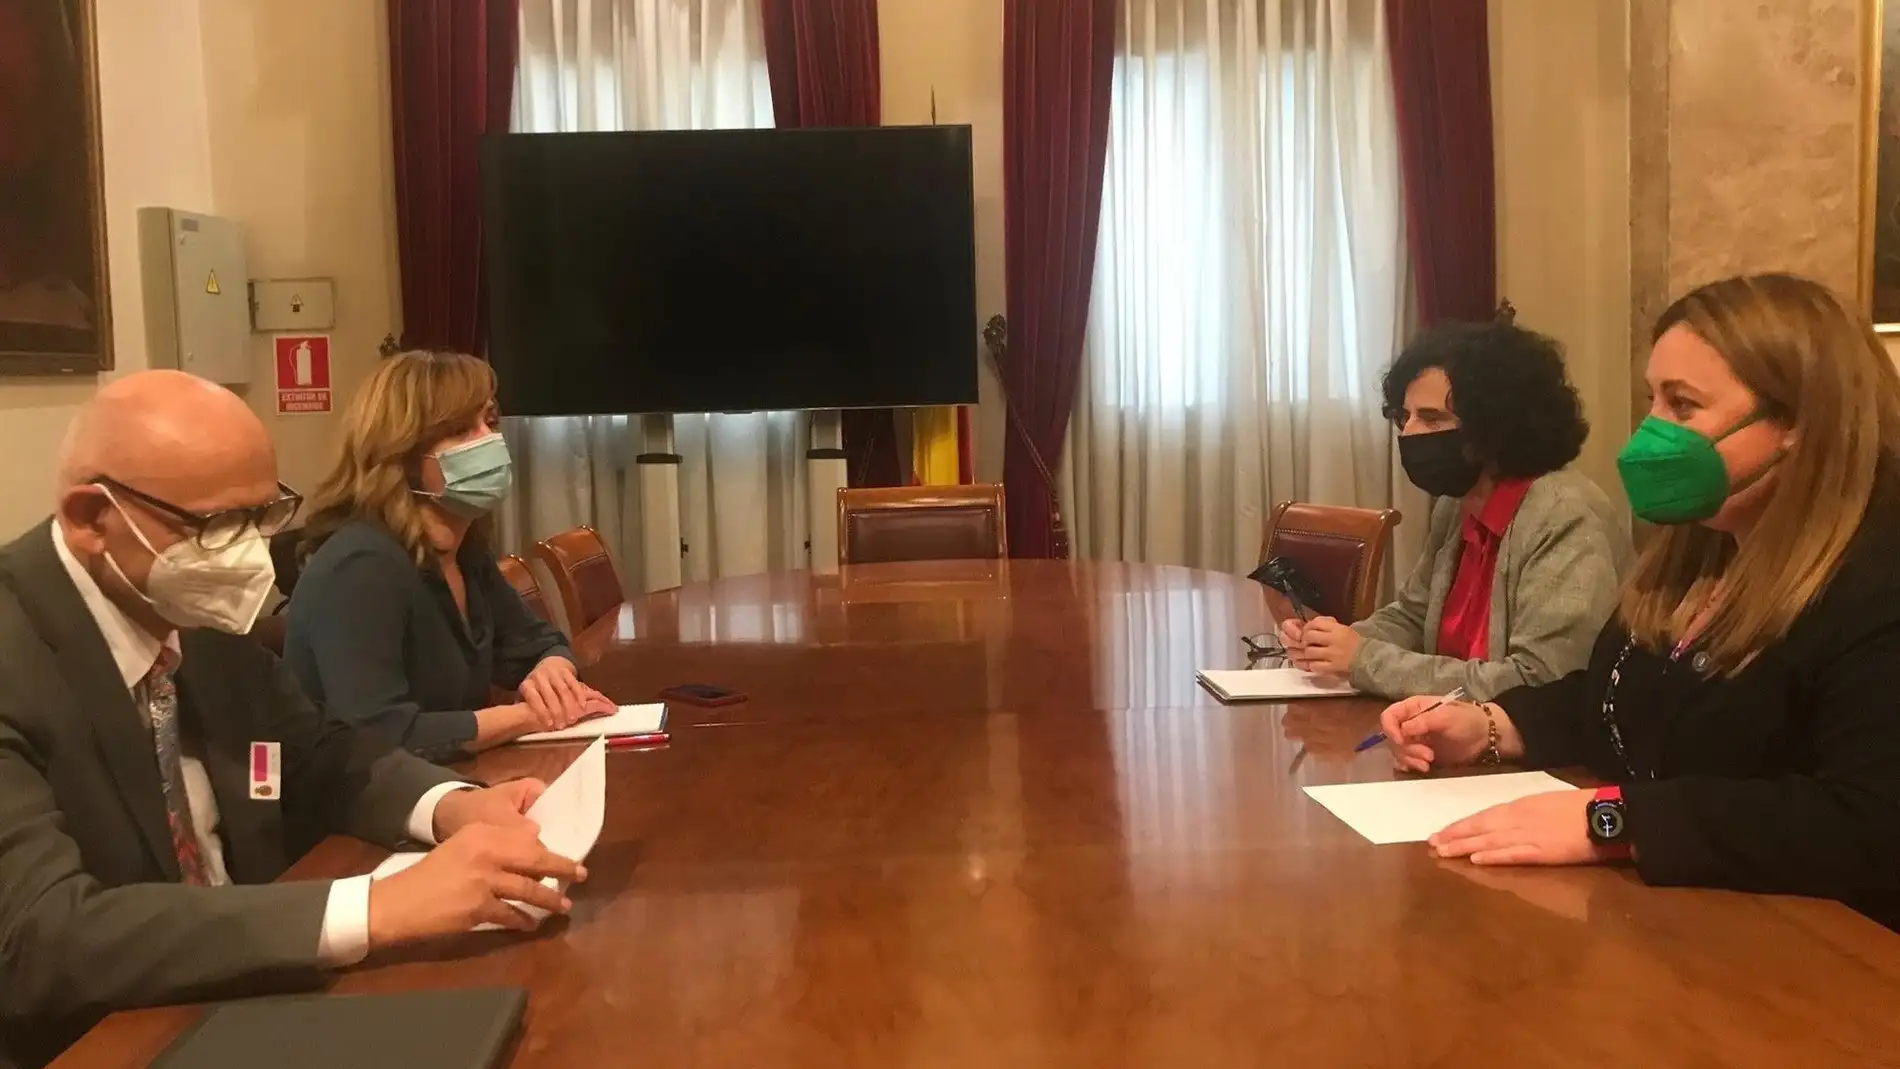 Reunión entre la ministra de educación, Pilar Algería, y las consejeras Lidia Espina y berta Piñán sobre el asturiano